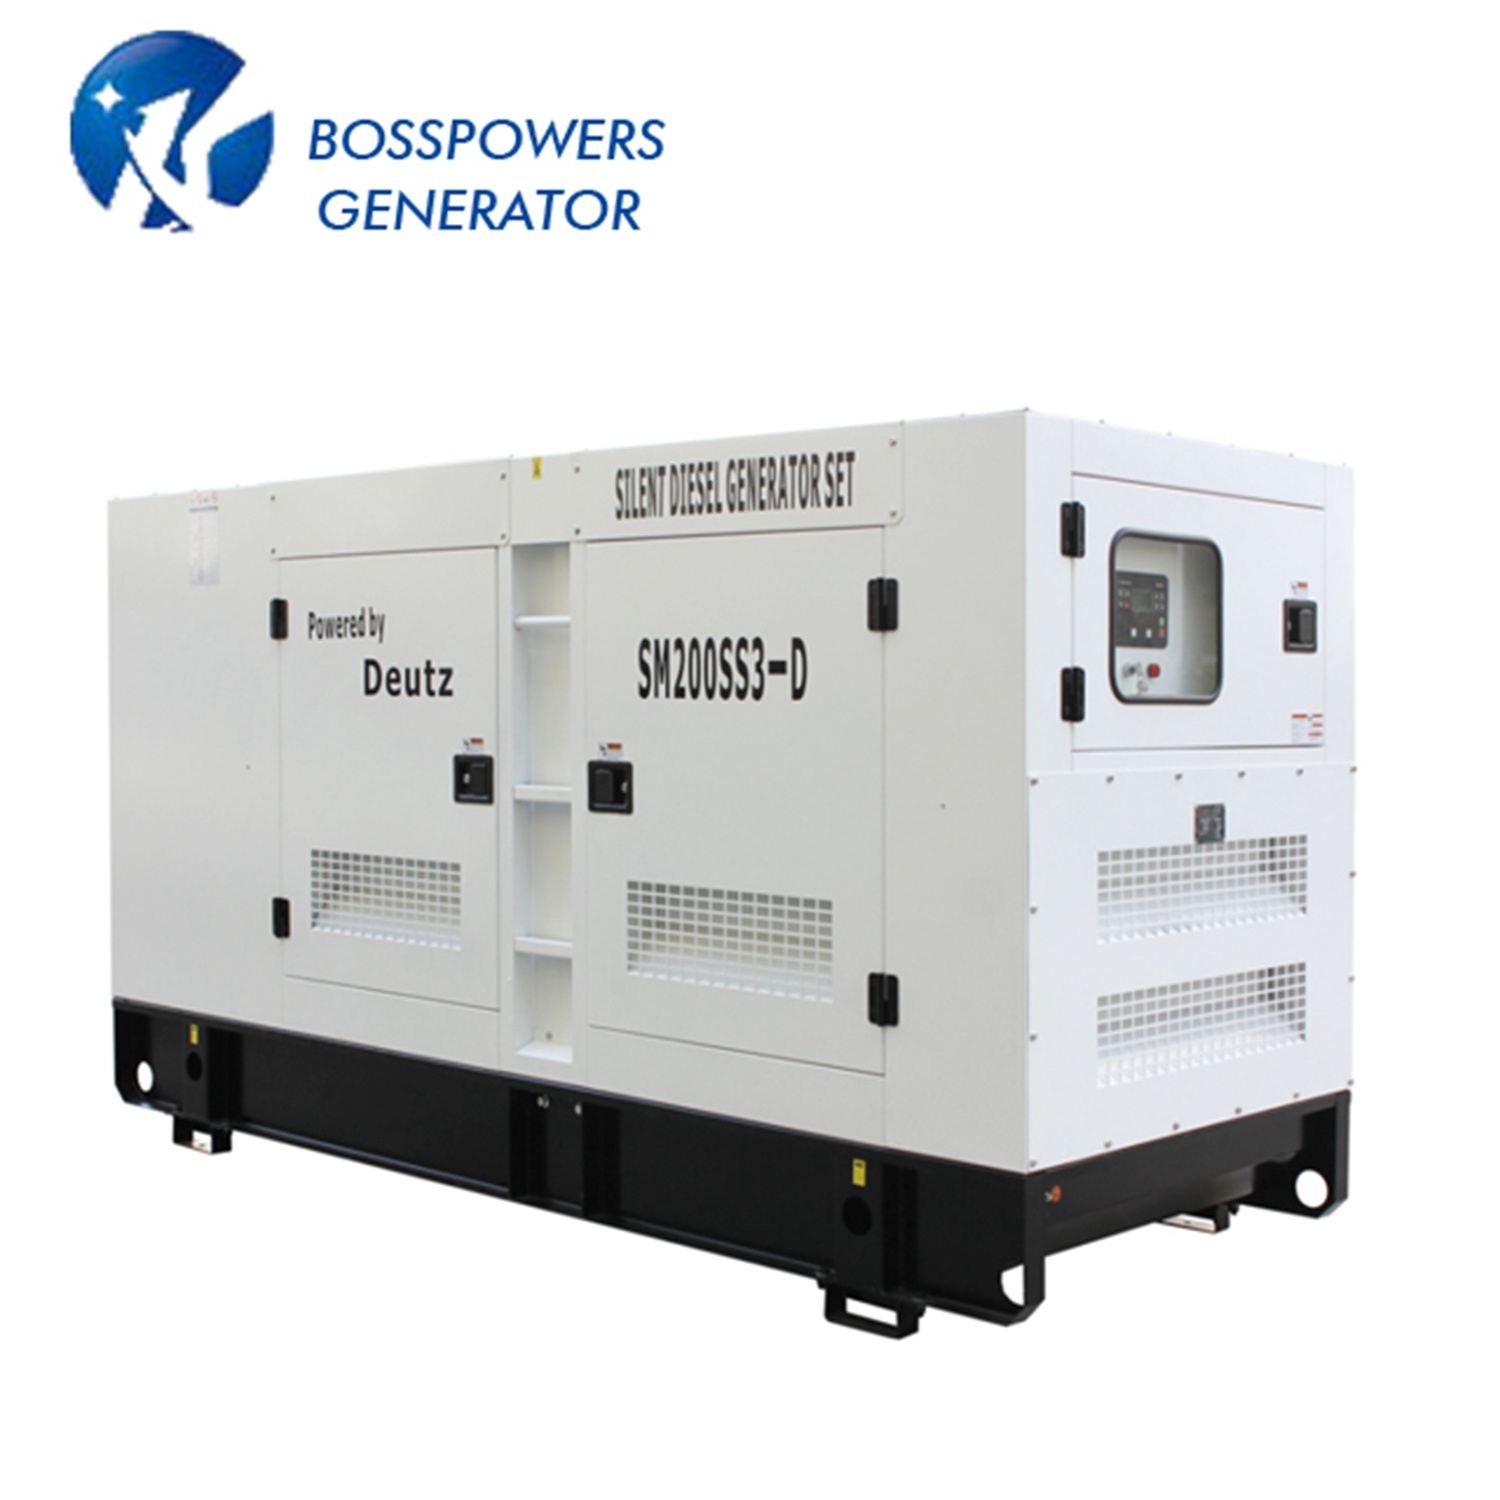 Power Generator with Perkins Engine 36kw Noiseless Industrial Diesel Generator Set